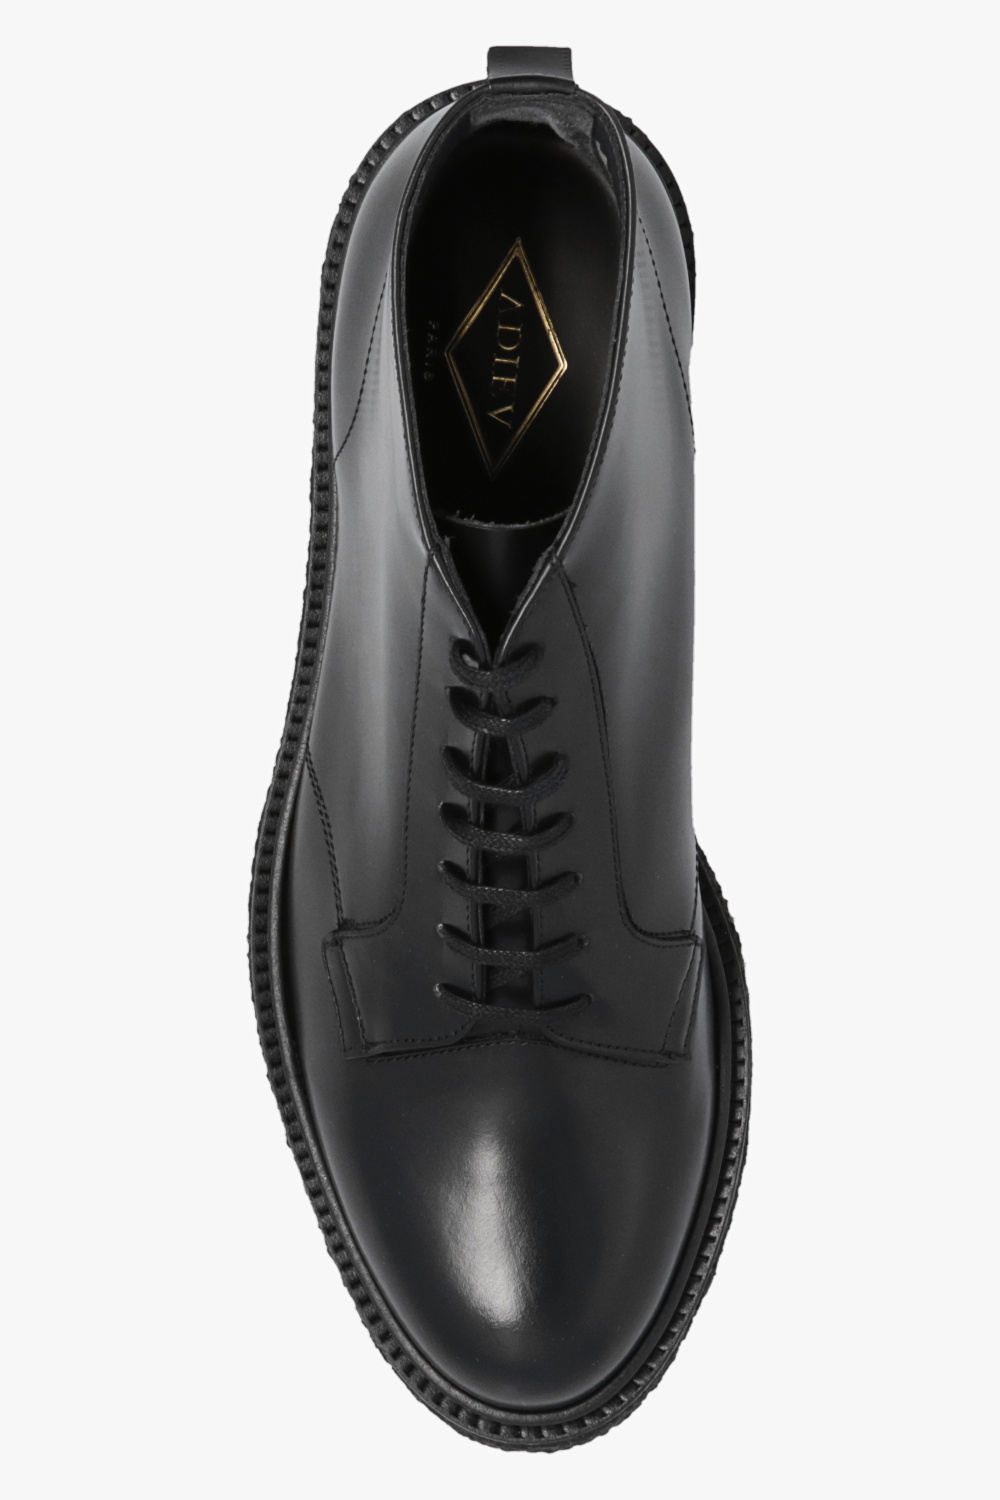 Adieu Paris 'Type 77' leather ankle boots | Men's Shoes | Vitkac